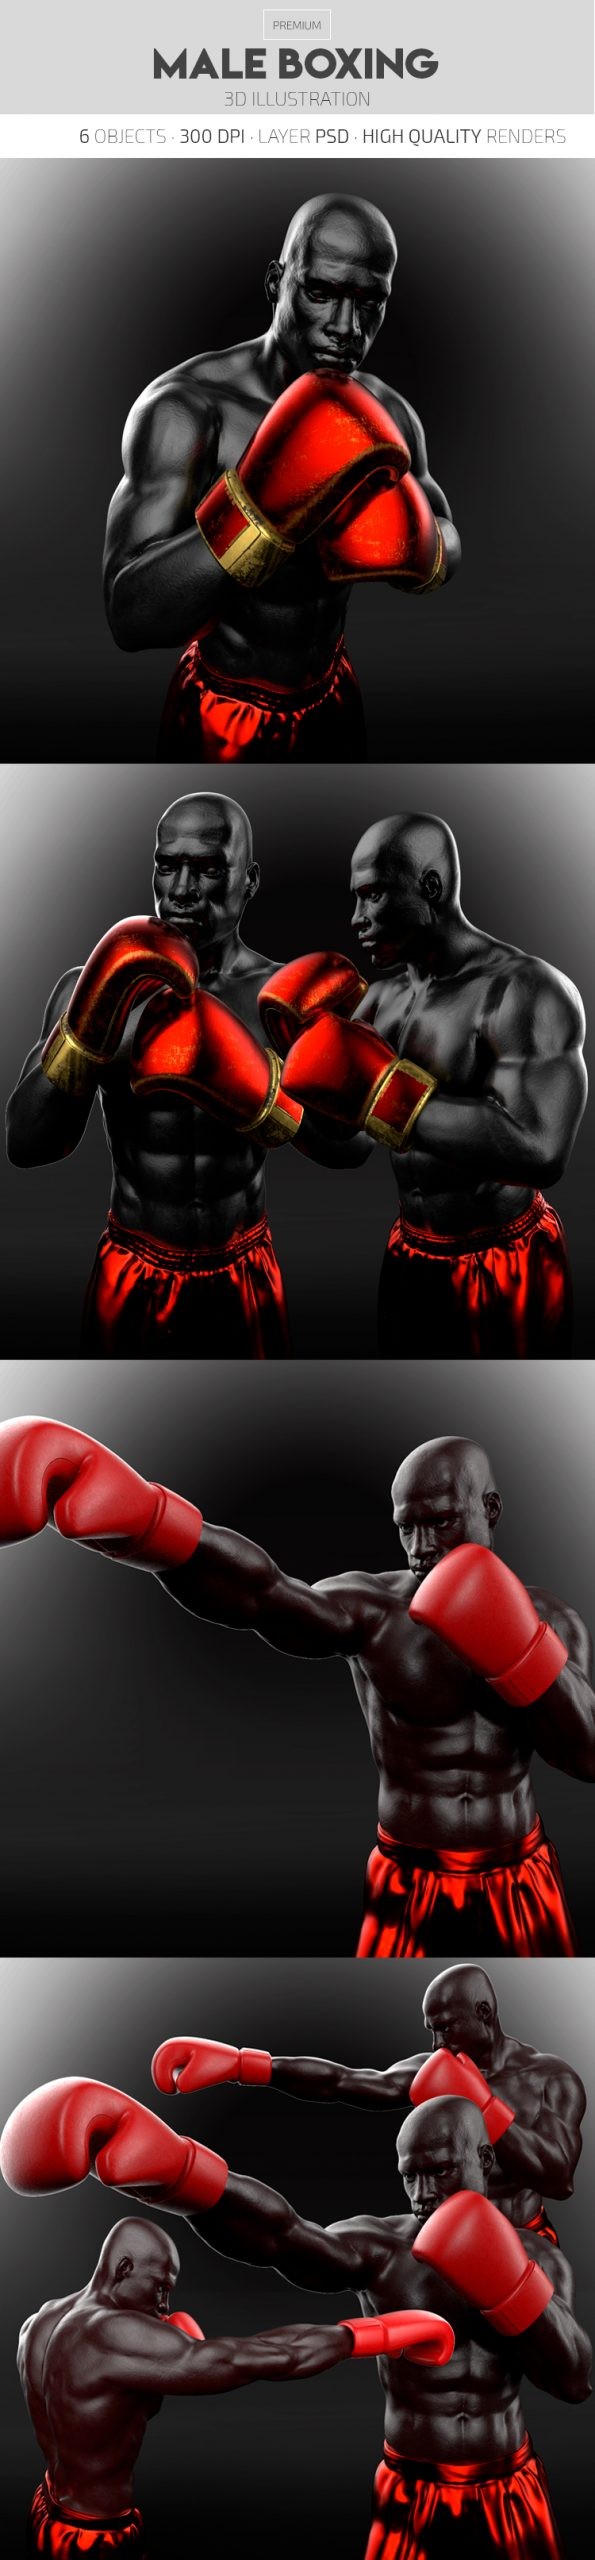 Male Boxing by ElegantFlyer